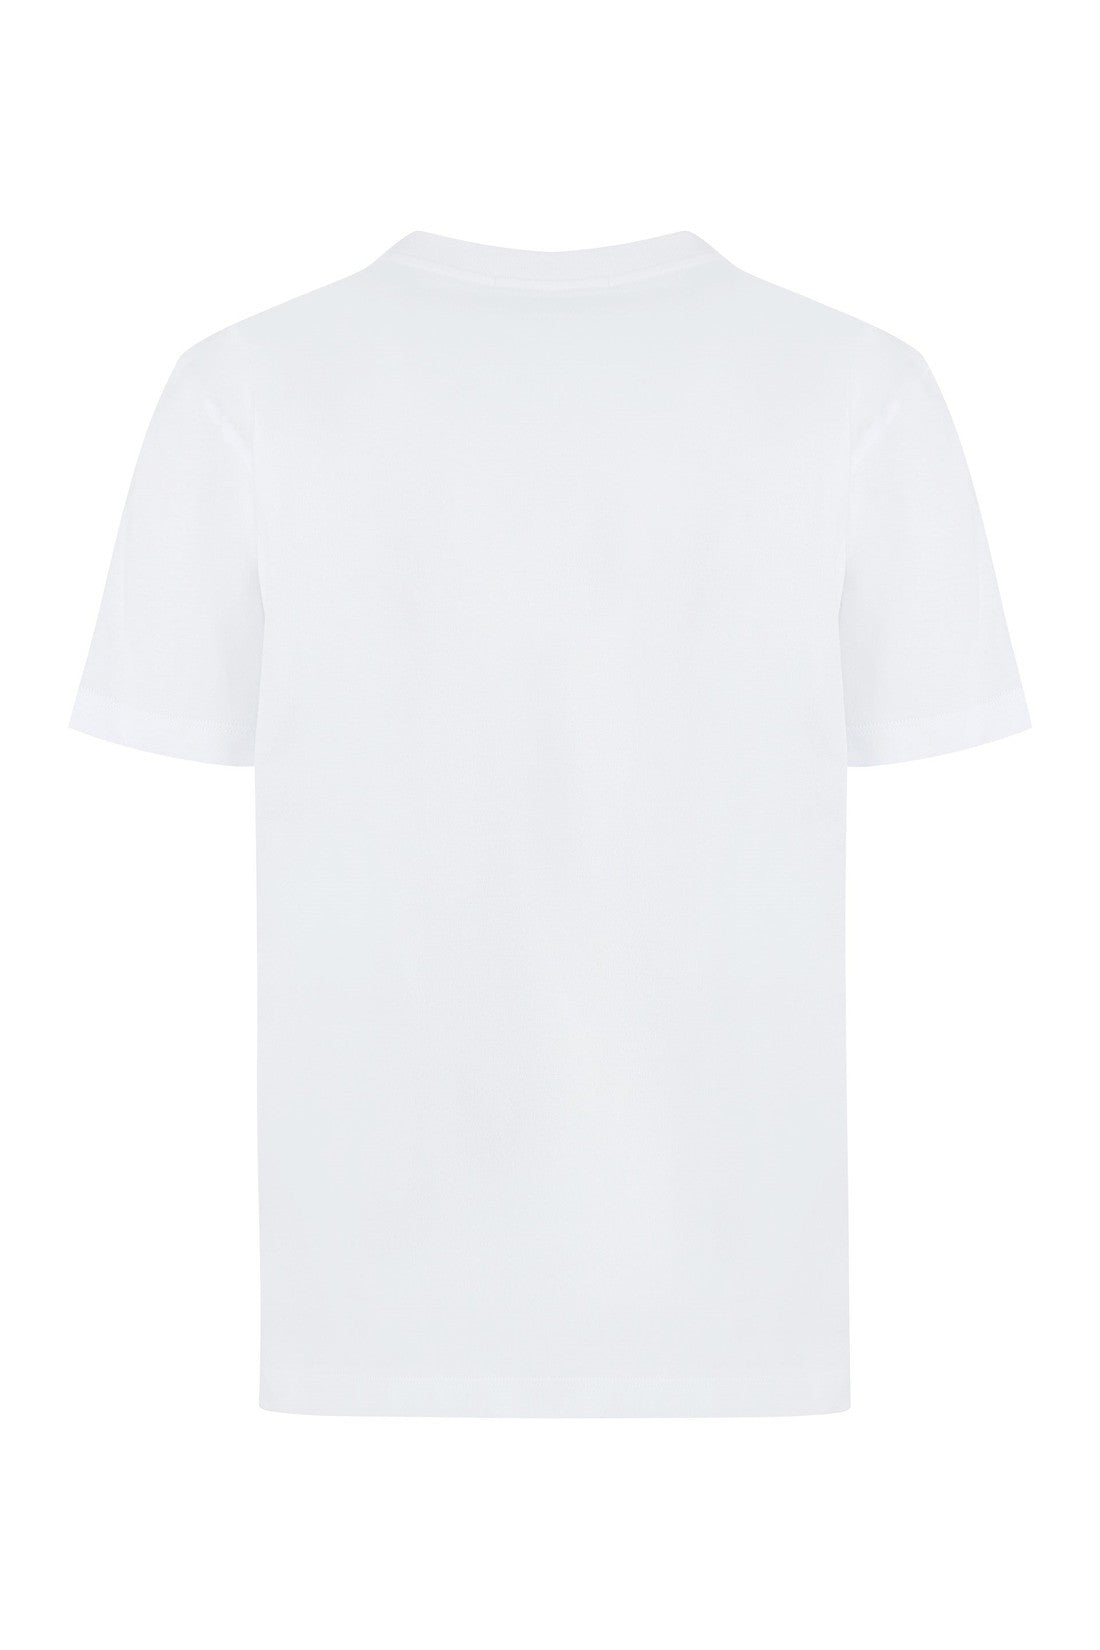 MSGM-OUTLET-SALE-Cotton crew-neck T-shirt-ARCHIVIST